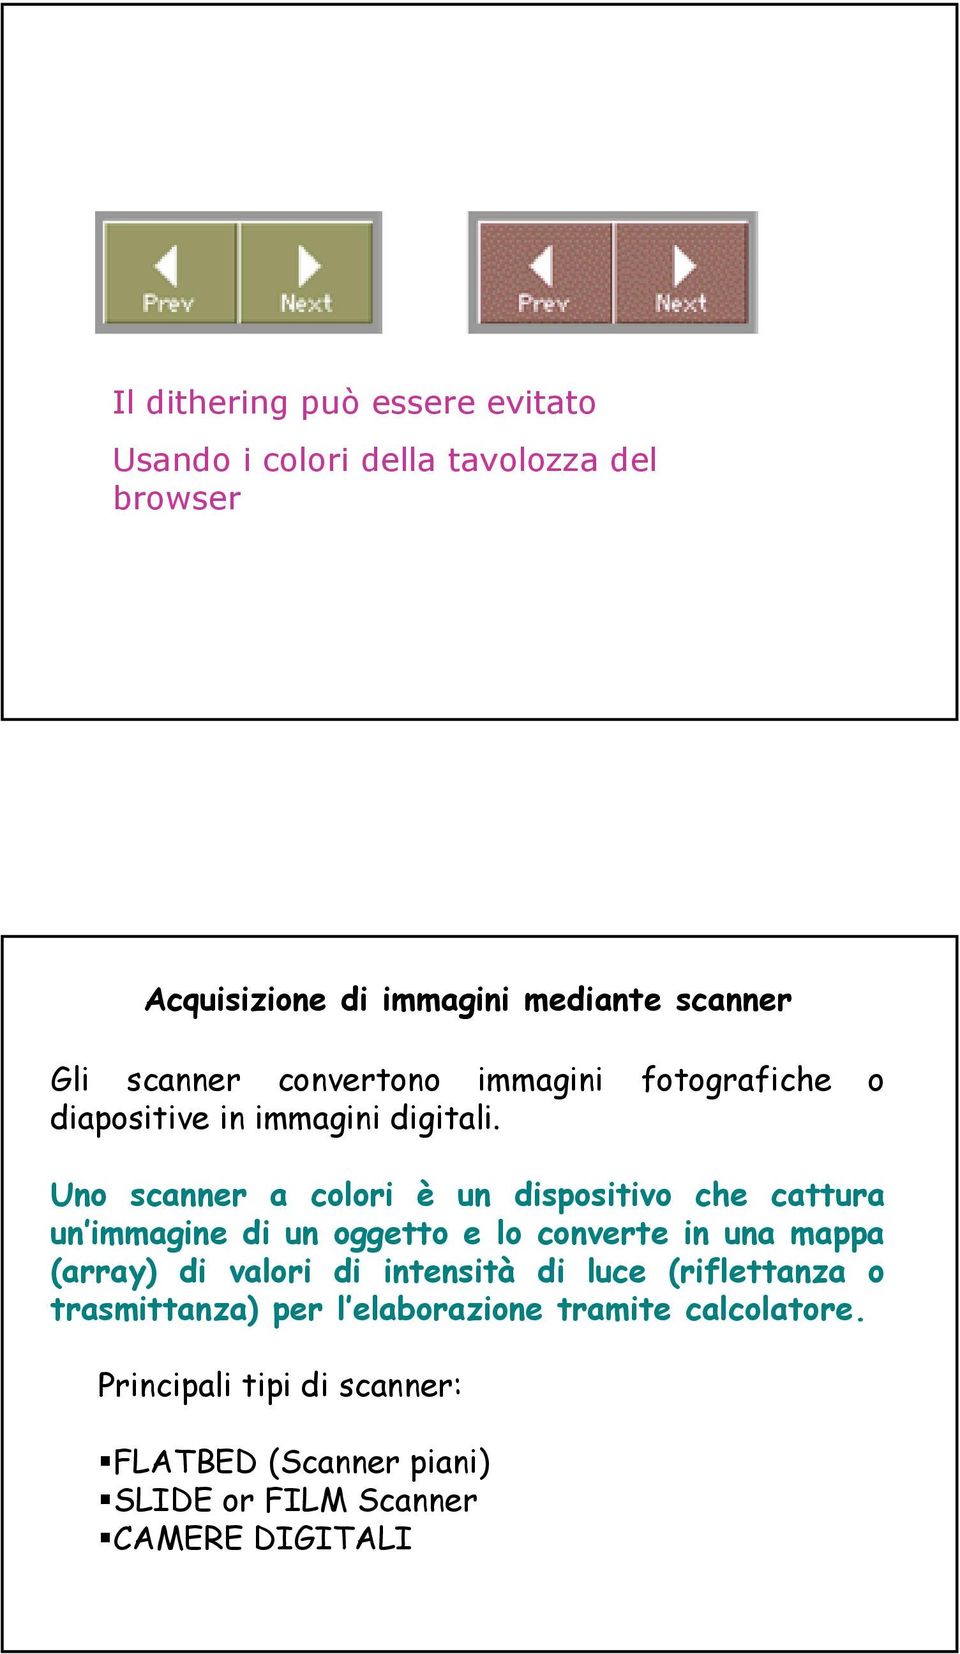 Uno scanner a colori è un dispositivo che cattura un immagine di un oggetto e lo converte in una mappa (array) di valori di